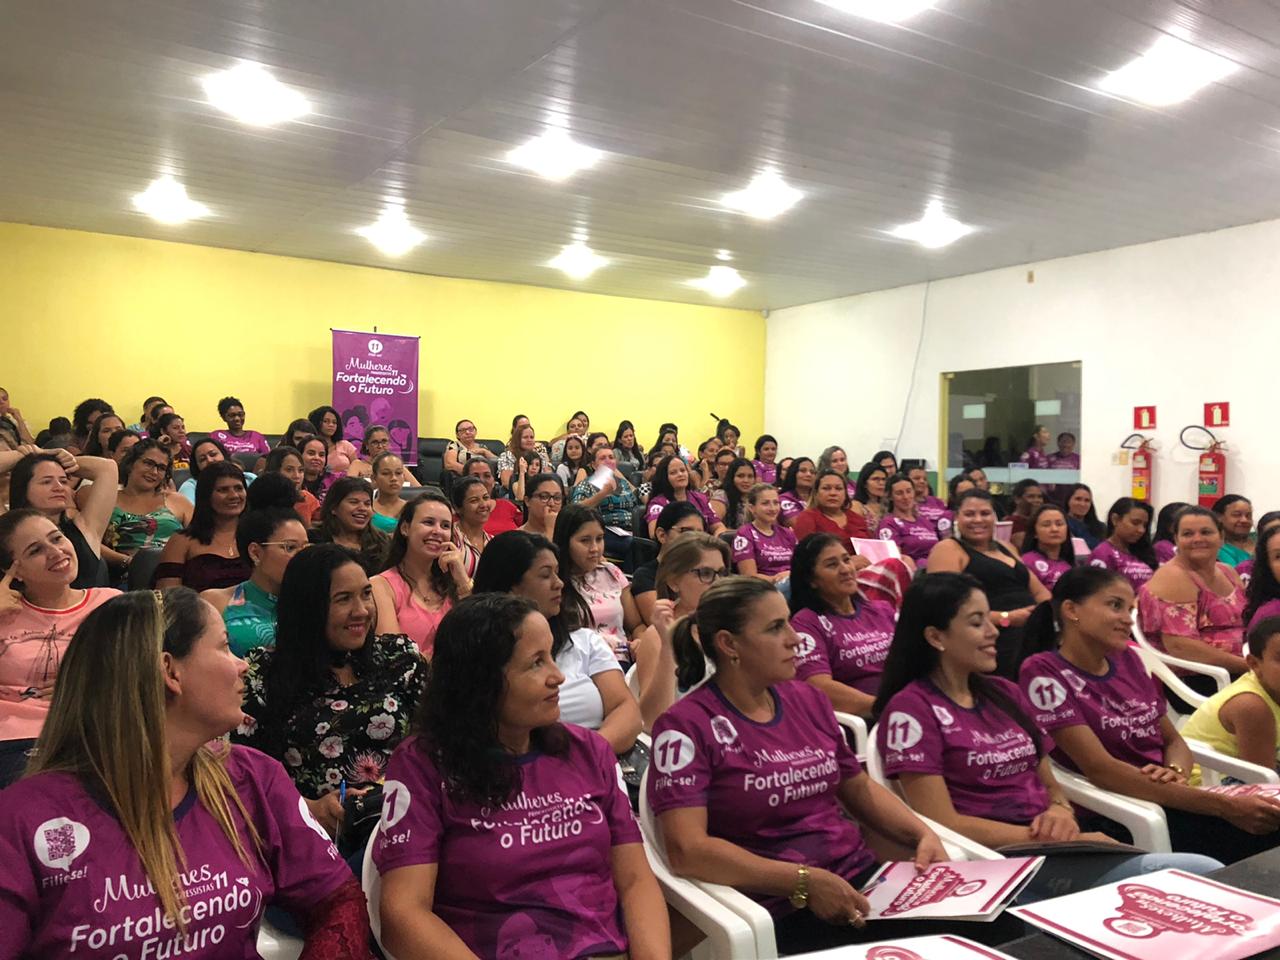 Sucesso de público no Encontro das Mulheres Progressistas realizado em Alta Floresta - progressistas - progressistas rondonia